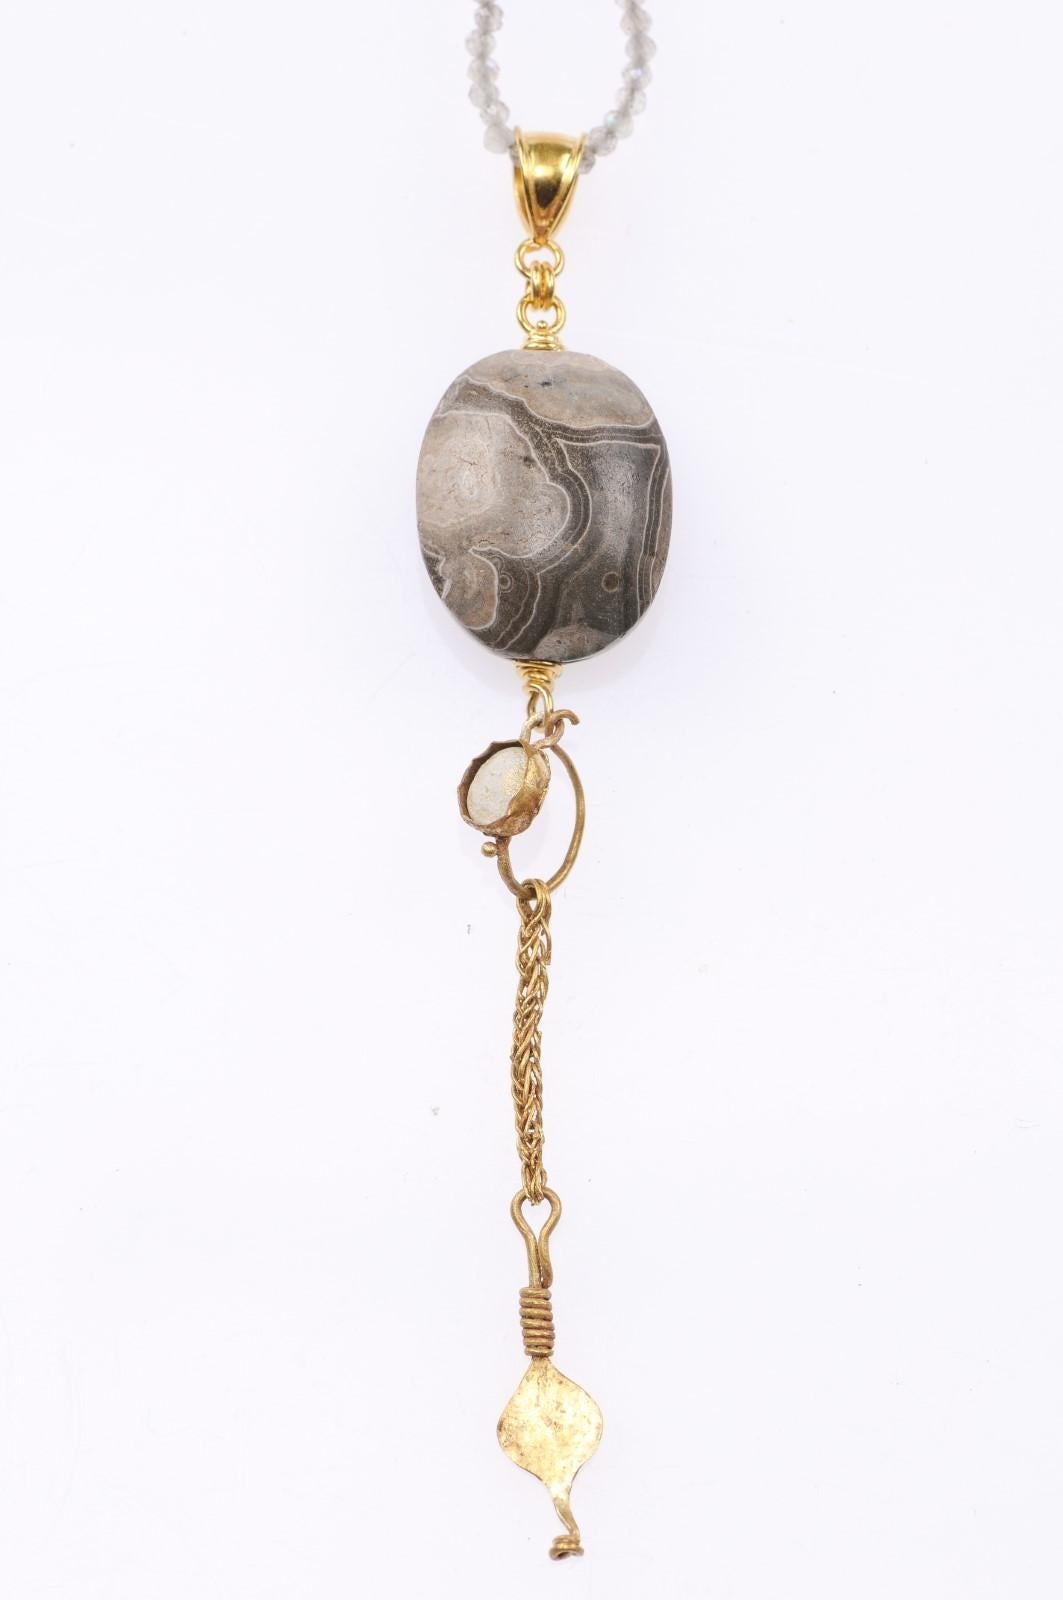 Un scarabée d'agate sumérien (vers 2000 avant J.-C.) est serti dans un pendentif en or 21 carats, avec une boucle d'oreille romaine en or avec verre (vers le 1er ou le 3e siècle avant J.-C.), et un anneau en or 21 carats. Les mesures sont les